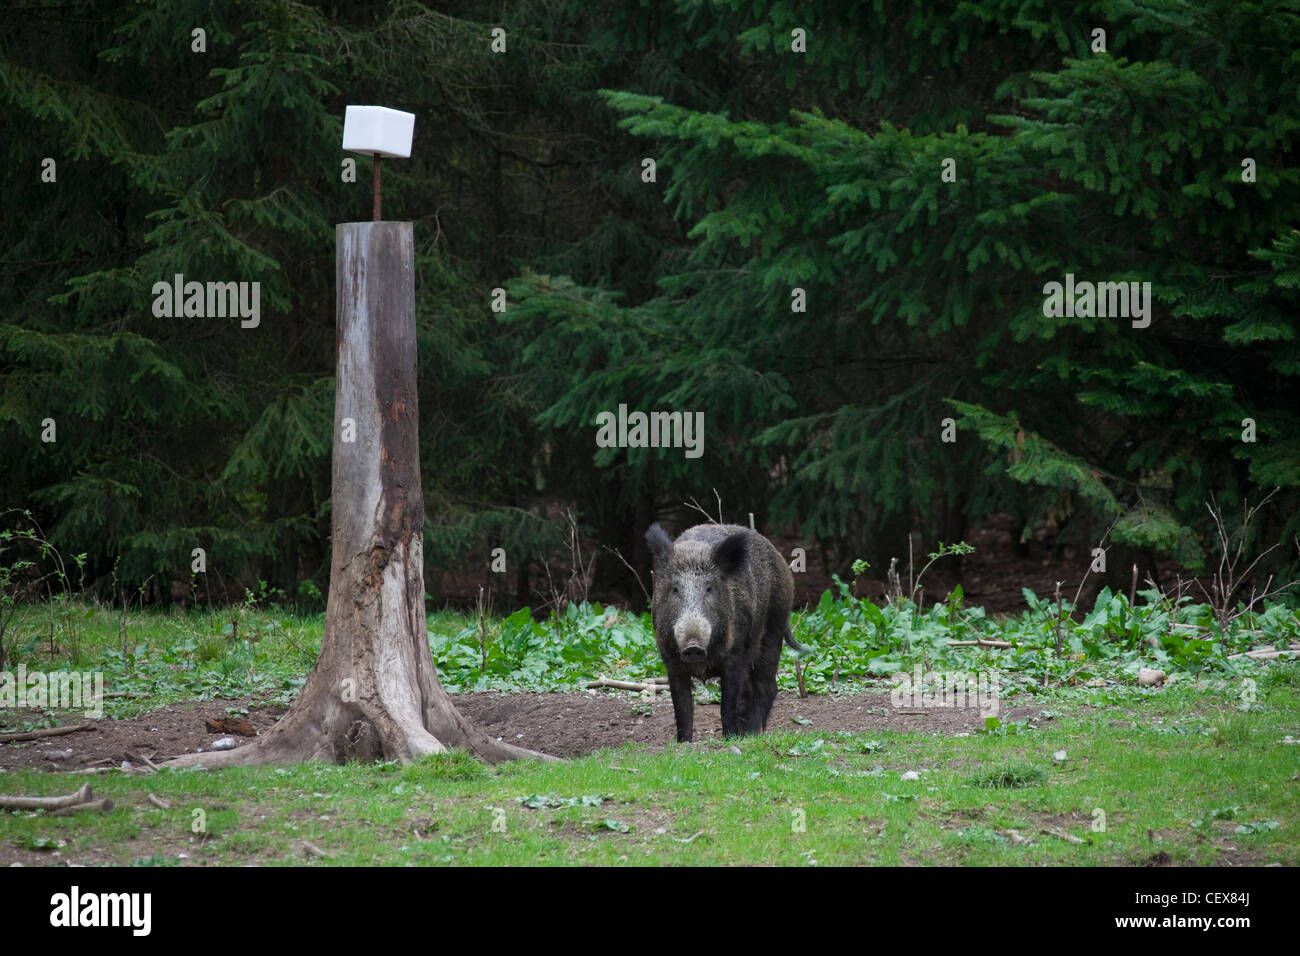 Le sanglier (Sus scrofa) sow à salt lick en forêt de pins, Allemagne Banque D'Images